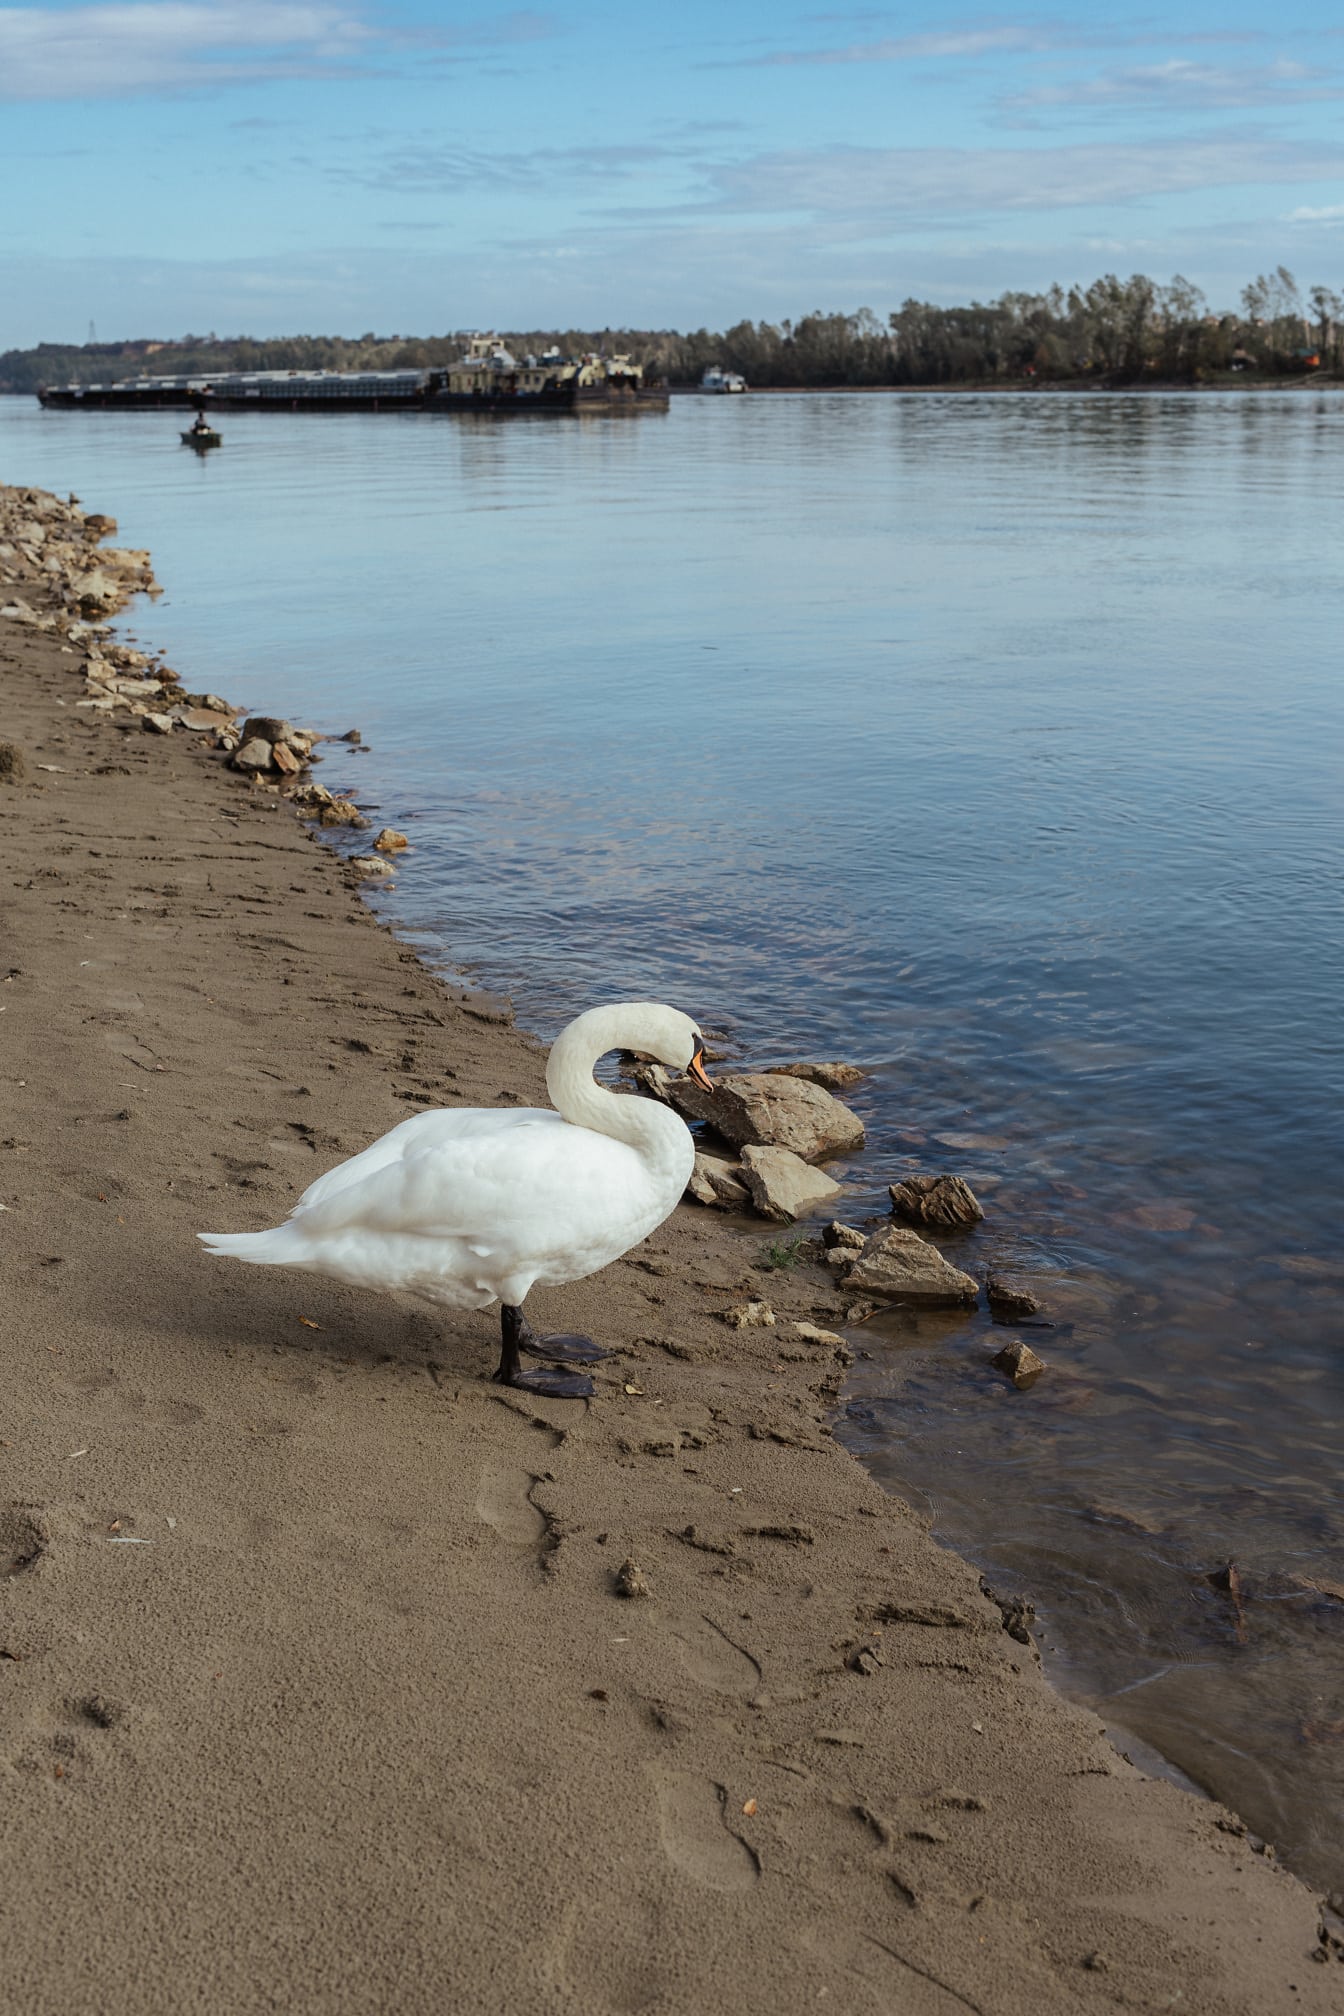 Oferta de pájaro cisne blanco en la orilla del río de arena húmeda